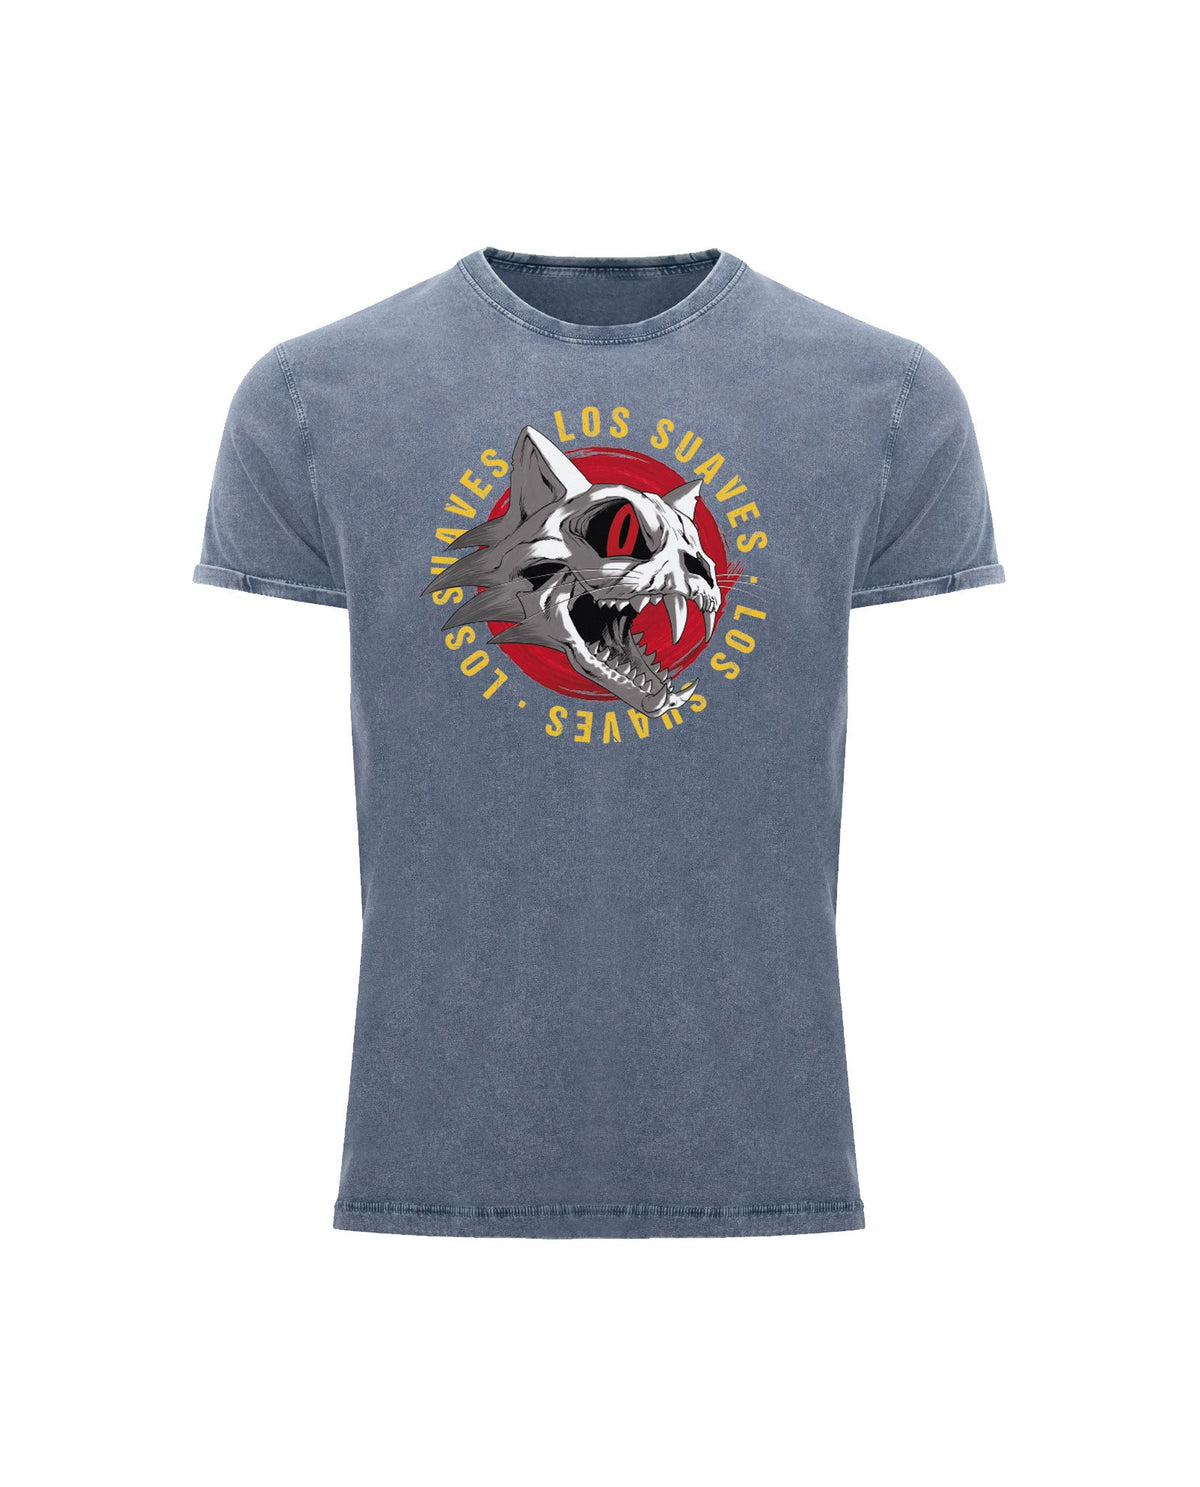 Los Suaves - Camiseta Denim "Calavera" Unisex Bicolor - D2fy · Rocktud - Los Suaves